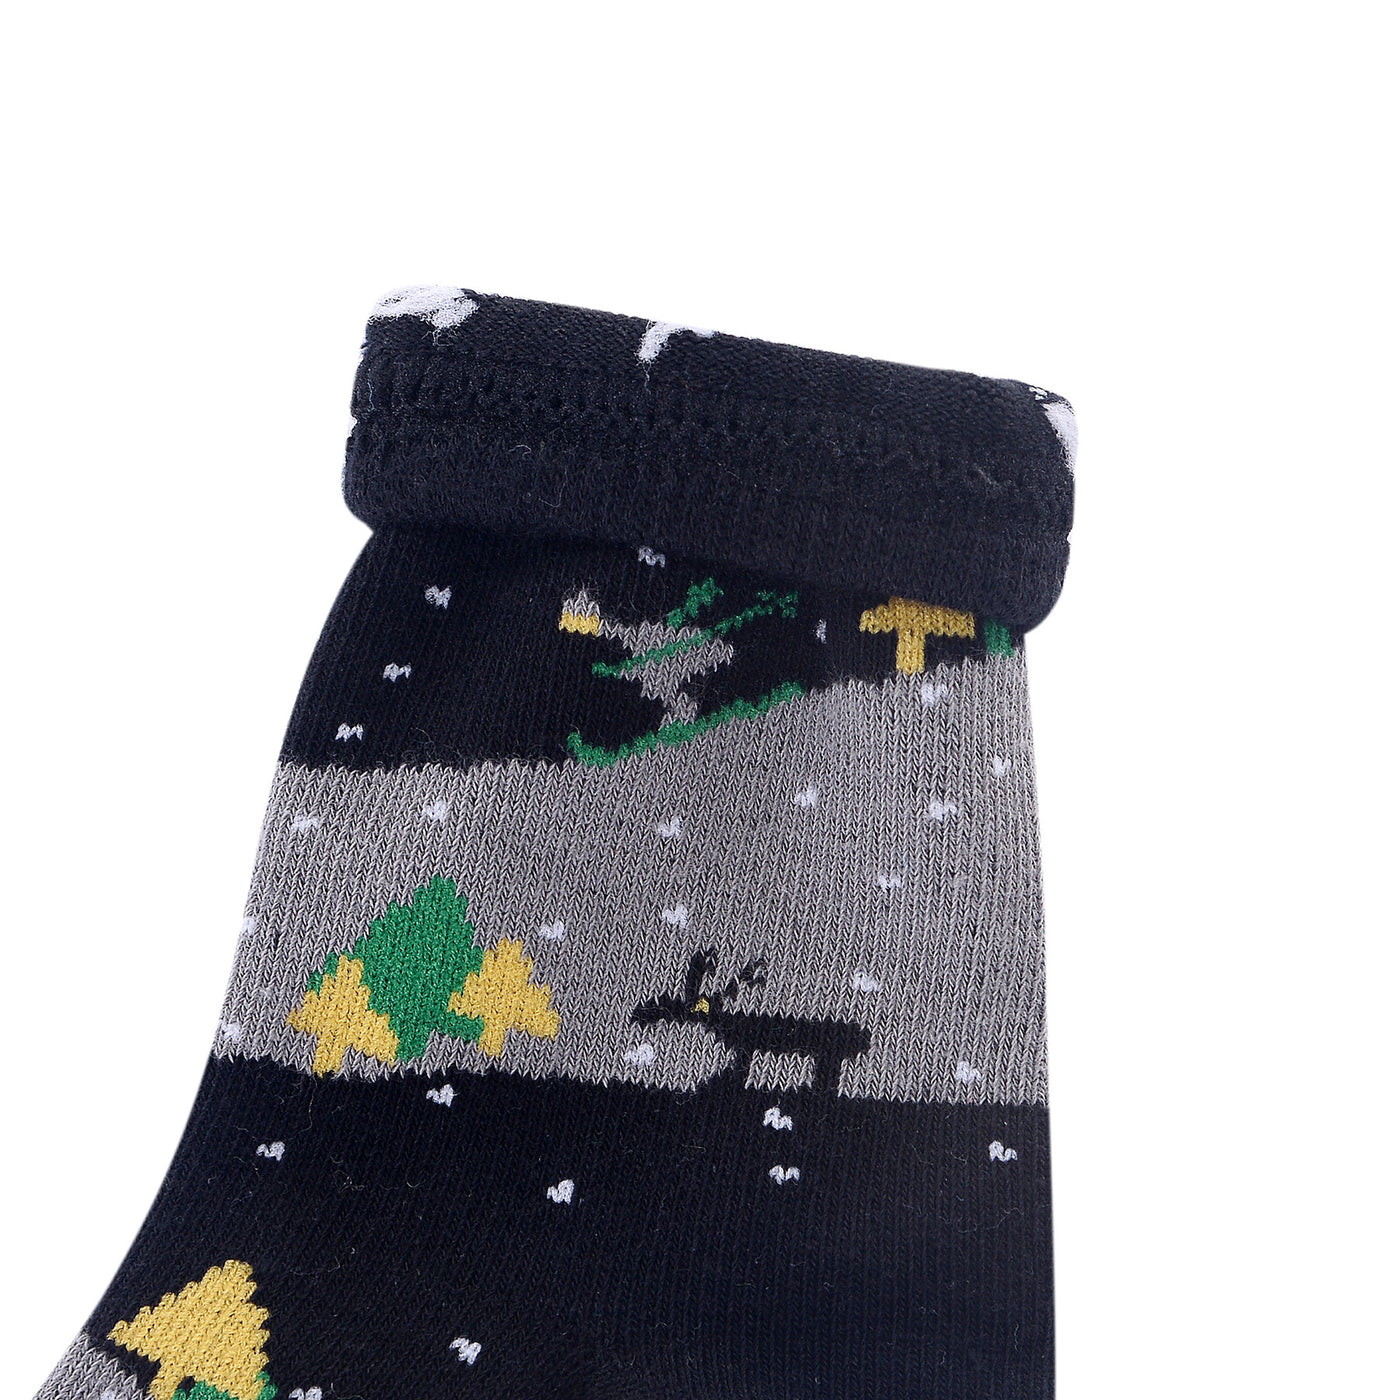 Laulax 6 Pairs Combed Cotton Boy's Socks Size UK 9-11.5/Europe 27-30 Gift Set